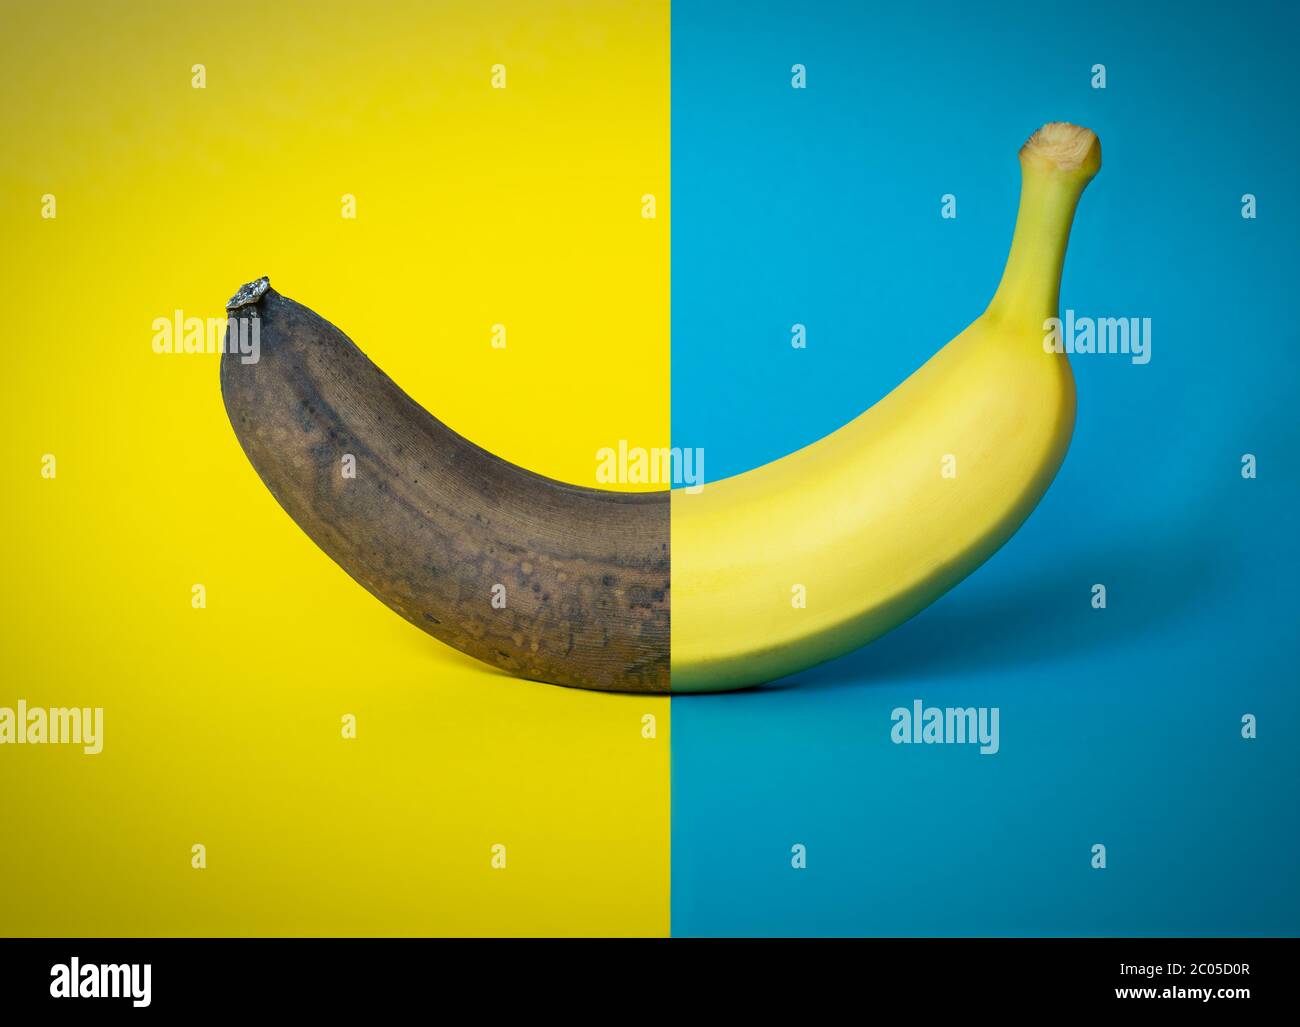 Medio buen medio engranaje plátano sobre fondo azul y amarillo de dos tonos, elemento gráfico, concepto de viejo y nuevo, diseño moderno, ideal para el backgroun gráfico Foto de stock